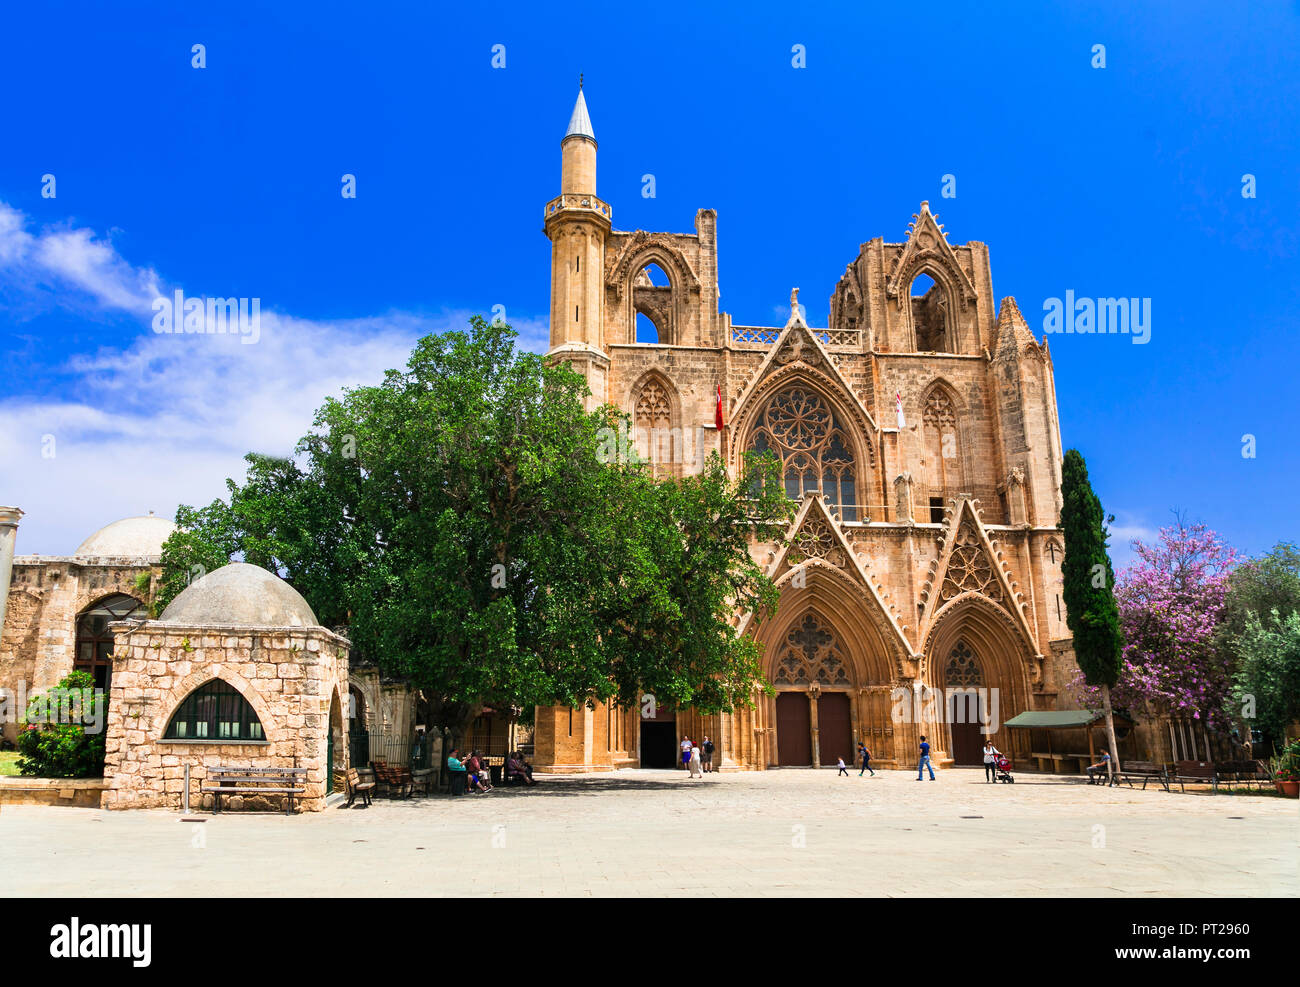 Impresionante catedral de San Nicolás en la ciudad de Famagusta, Chipre, la parte turca. Foto de stock